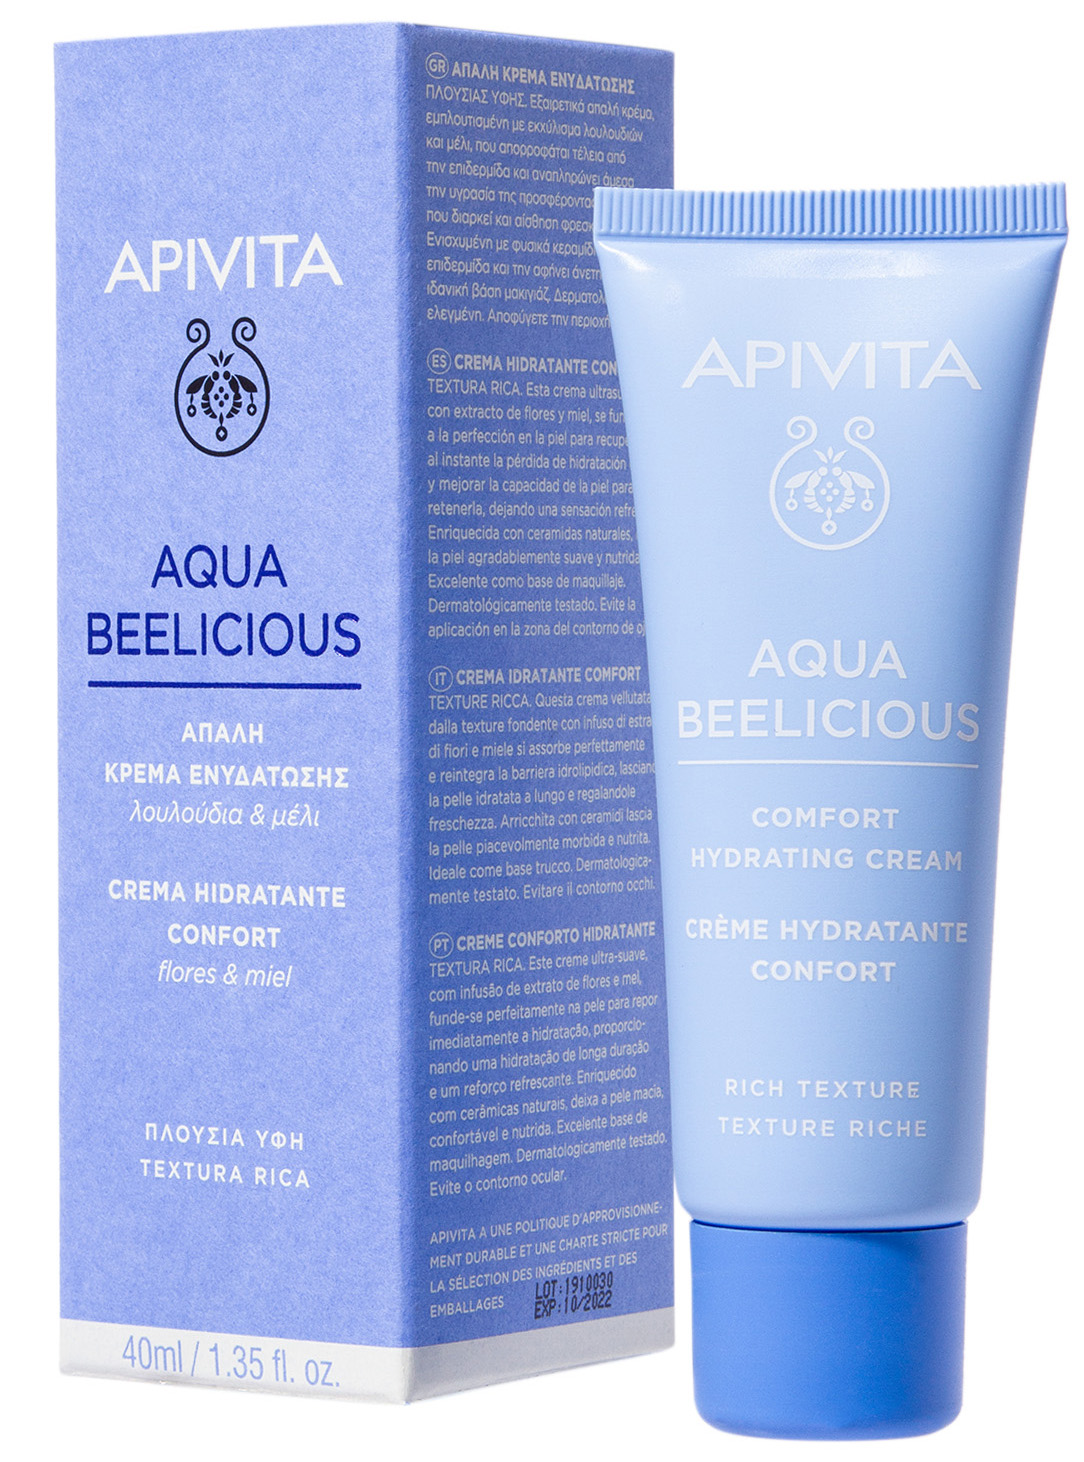 Aqua Beelicious крем-комфорт насыщенной текстурой 40мл (Апивита Аква Билишес)